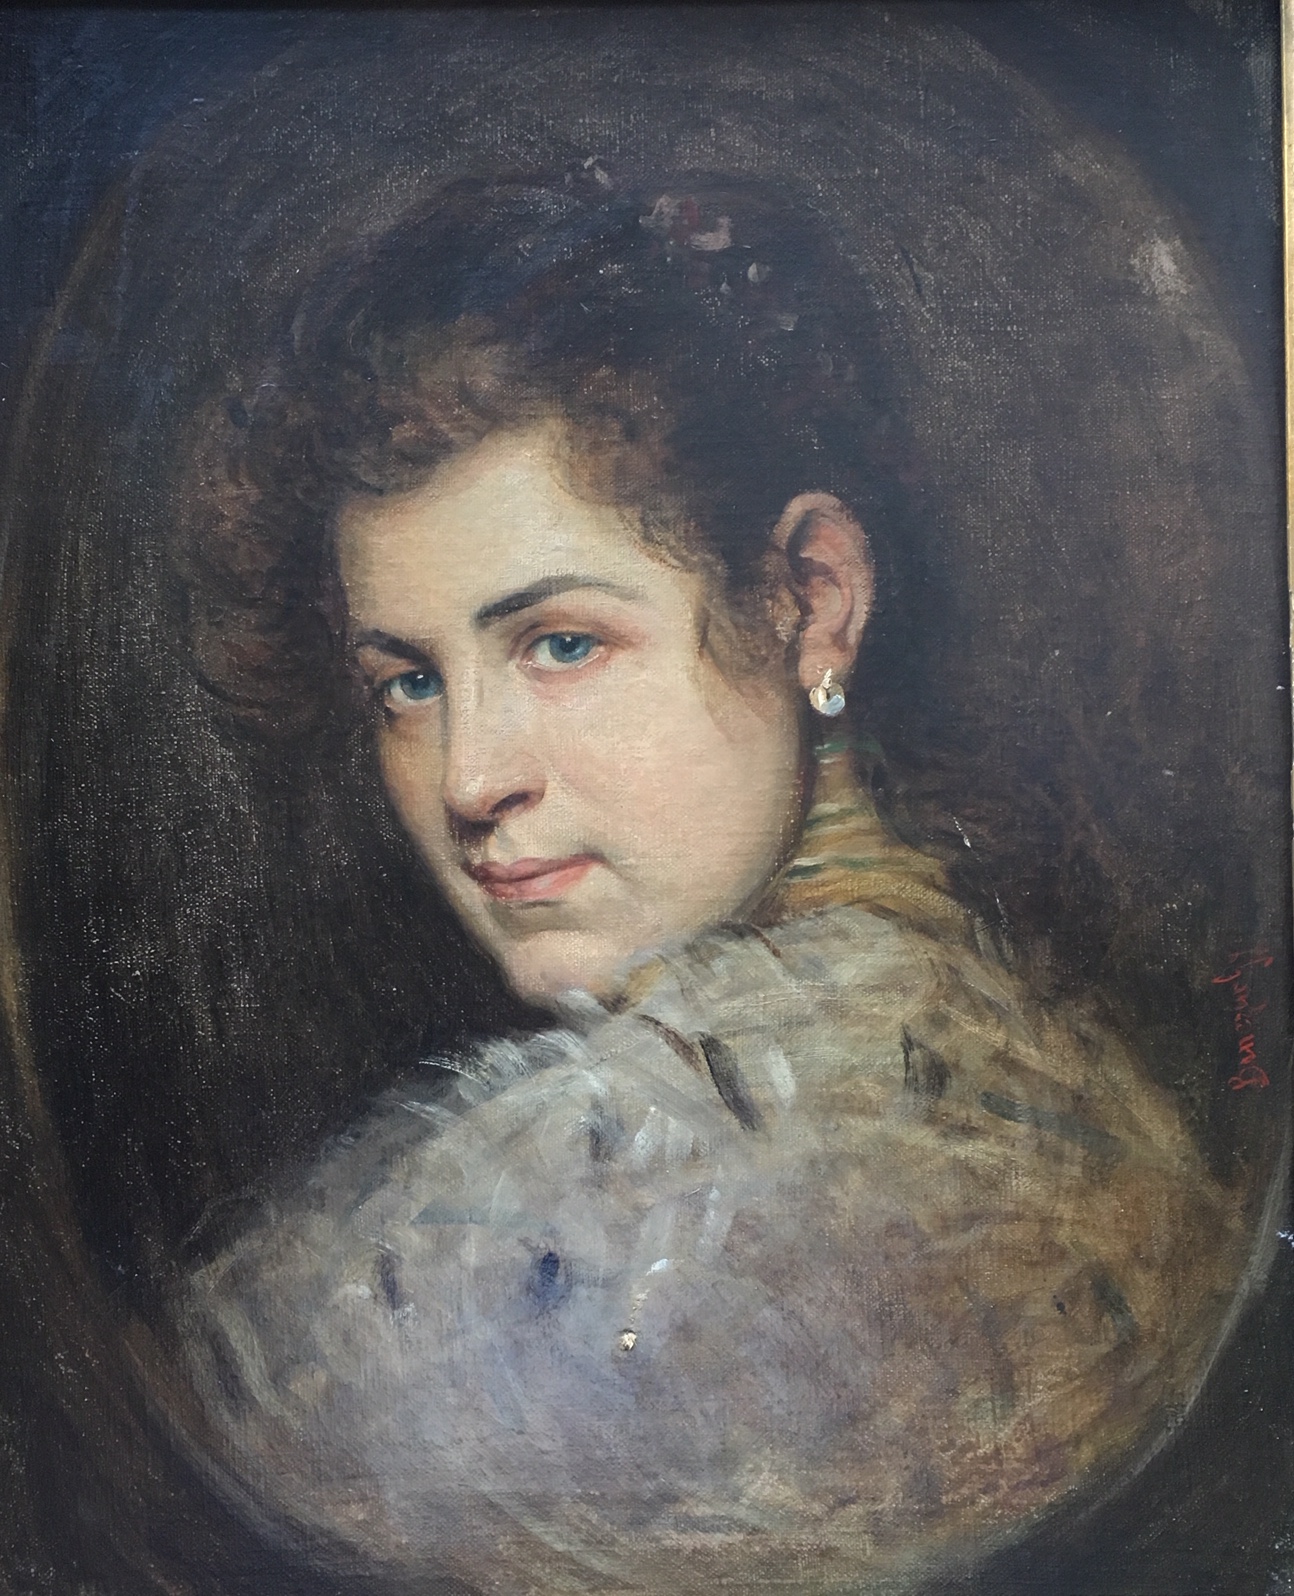 Benczúr, Gyula von: Portrait einer Dame